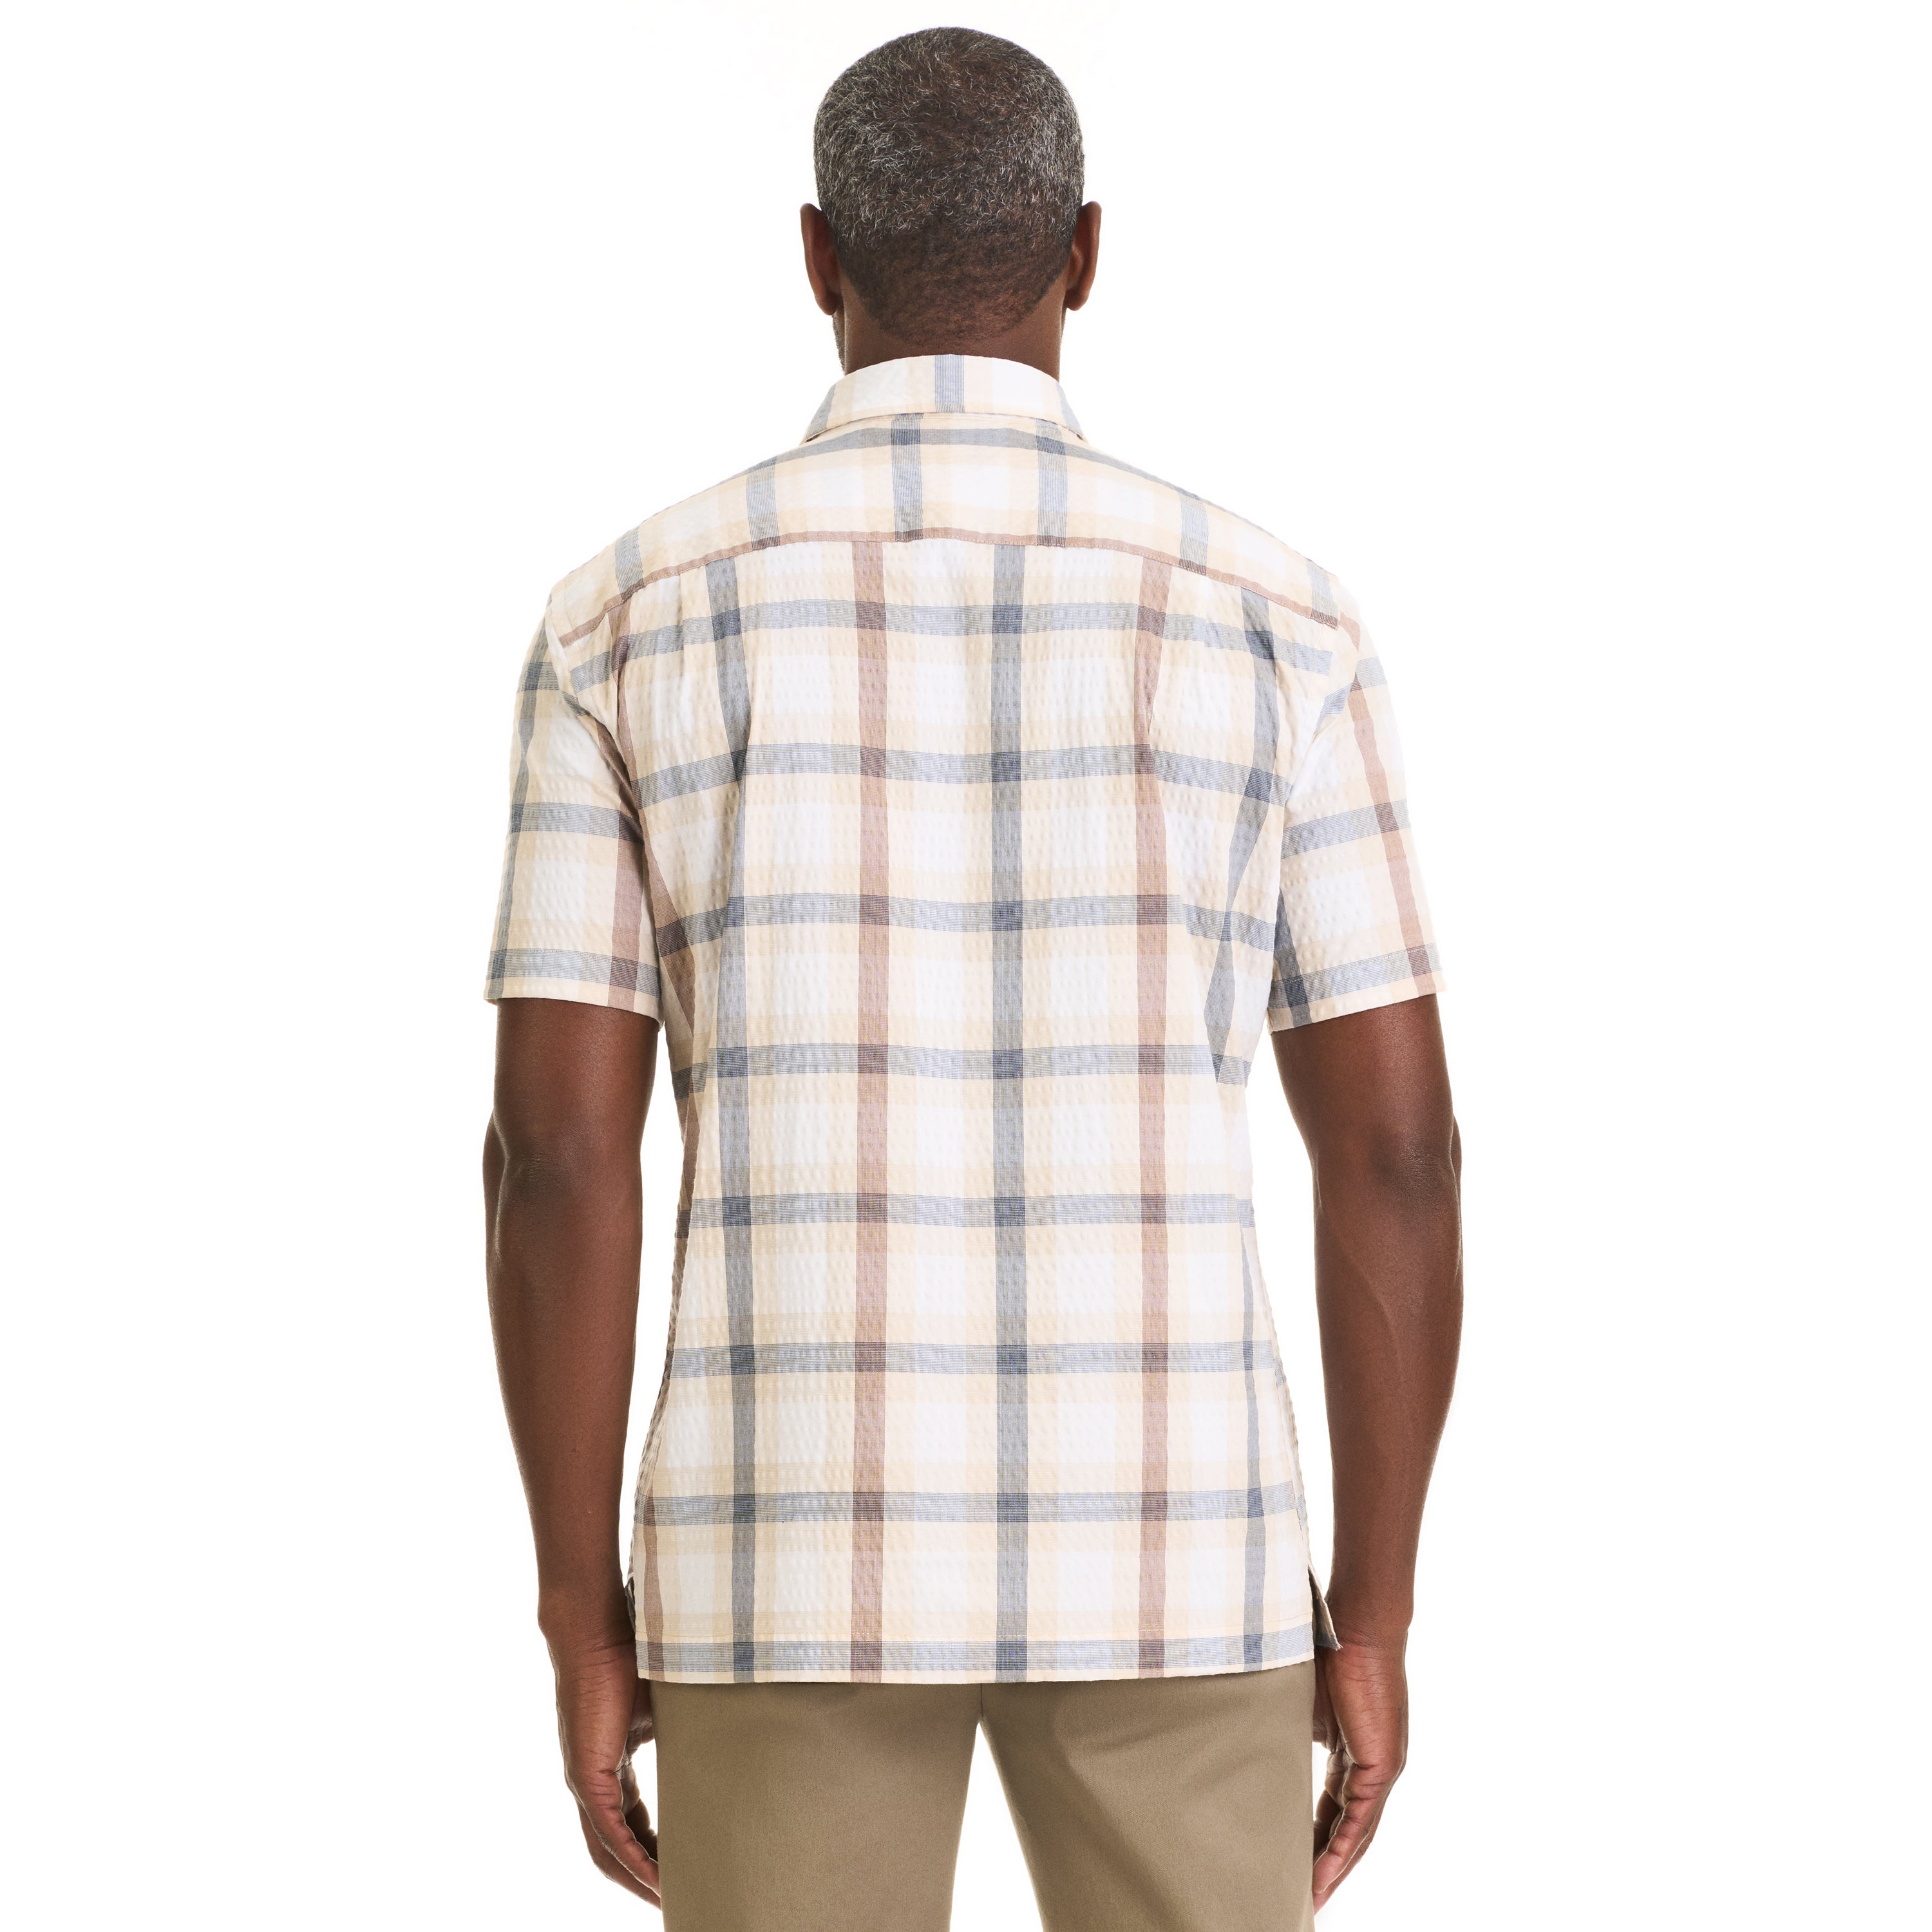 Weekend Seersucker Plaid Short Sleeve Button Up Top – Regular Fit